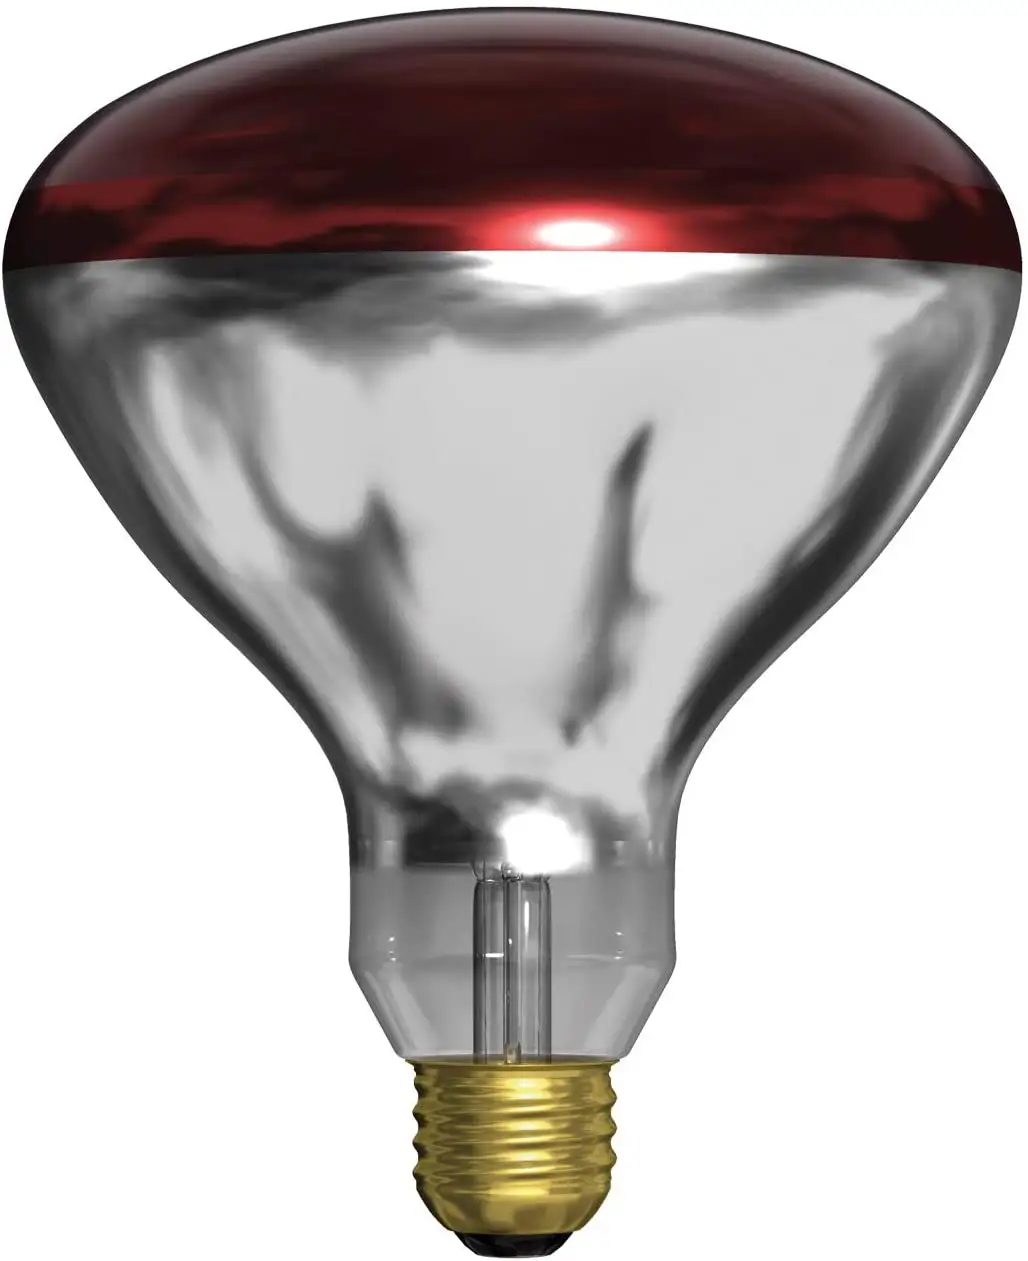 उच्च शक्ति 125W 150W 250W अवरक्त Basking स्पॉट गर्मी दीपक बल्ब लाल साँप प्रकाश